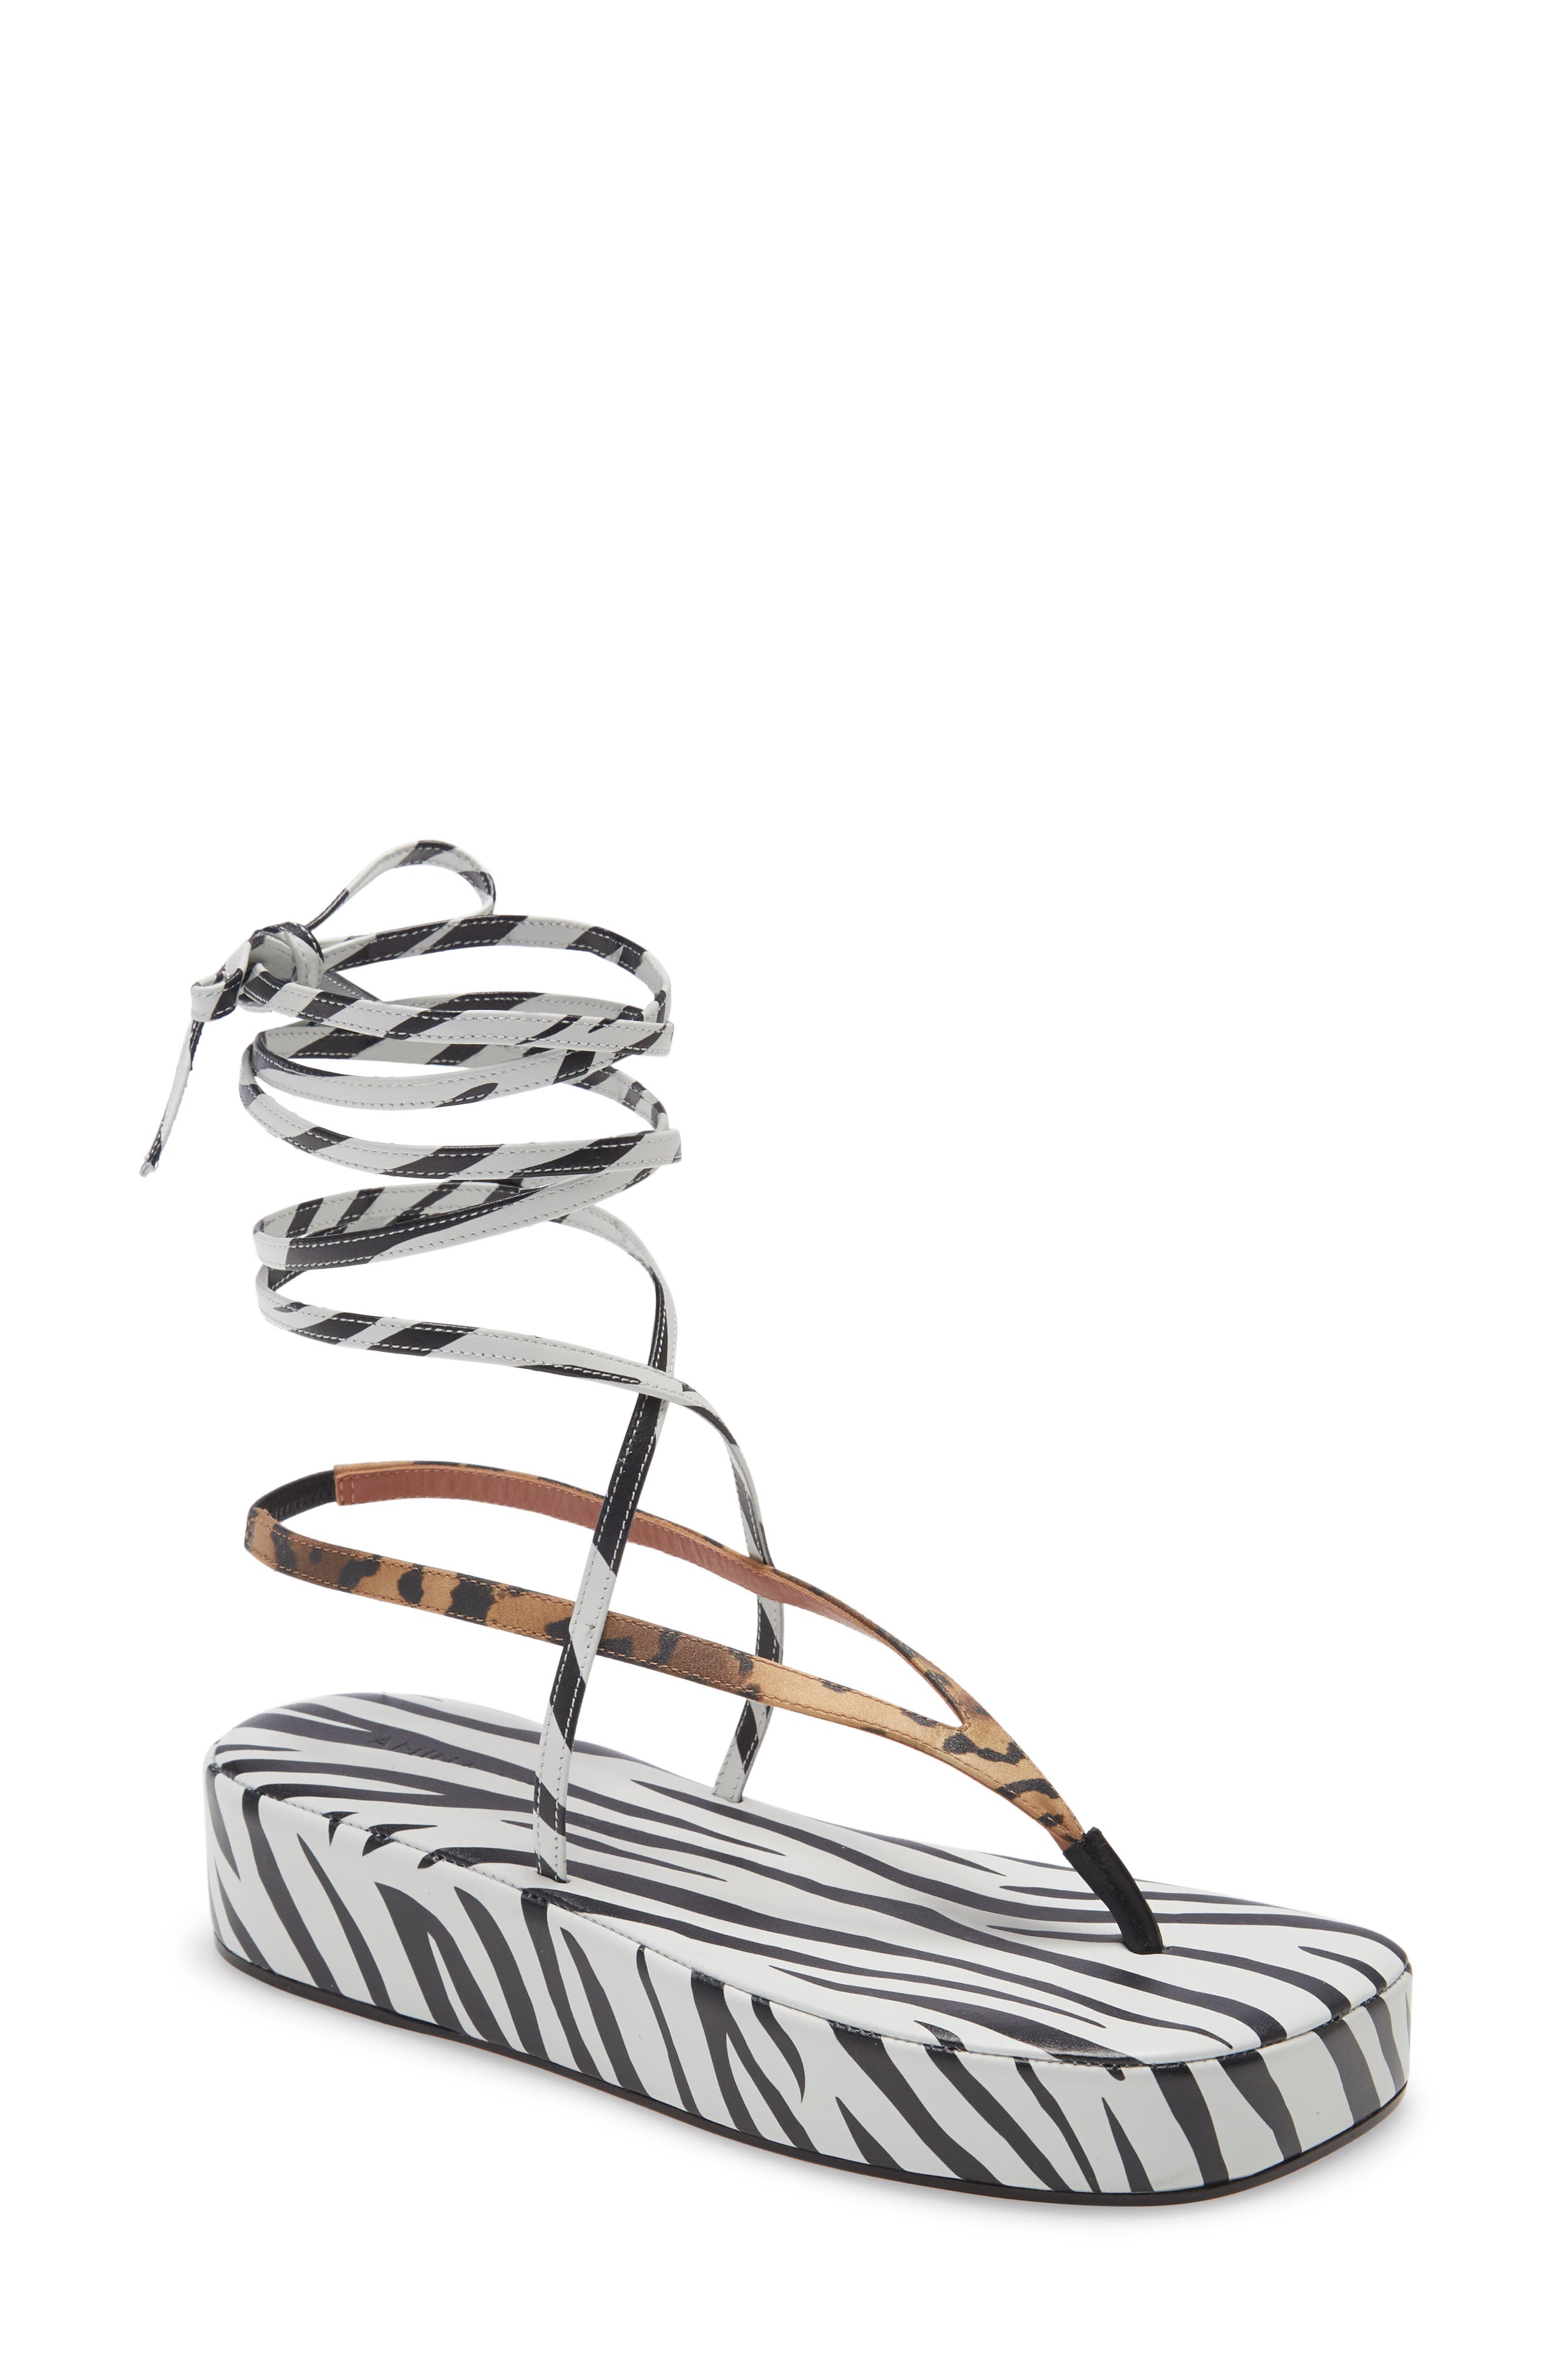 Amina Muaddi Ankle Tie Platform Sandal in Leopard Satin/Zebra Nappa at Nordstrom, Size 12Us